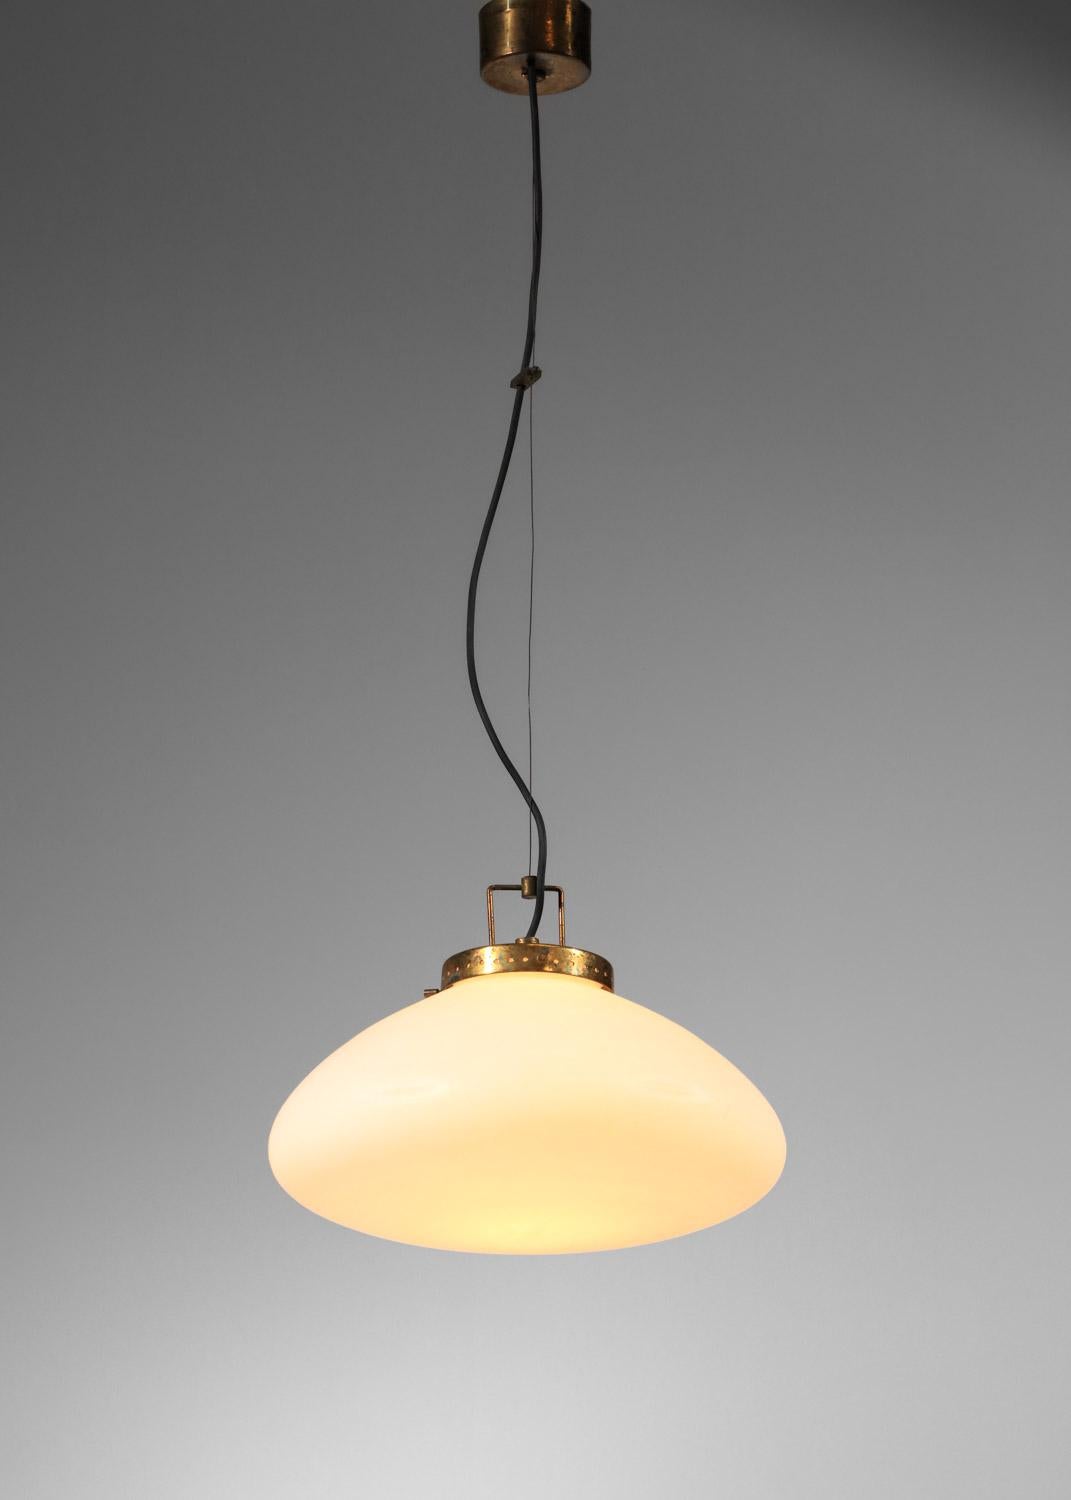 Lampe suspendue italienne des années 50, attribuée à la maison d'édition Stilnovo. Abat-jour en forme de soucoupe en opaline blanche, système de suspension et baldaquin au plafond en laiton massif. La hauteur totale du lustre peut être réglée à